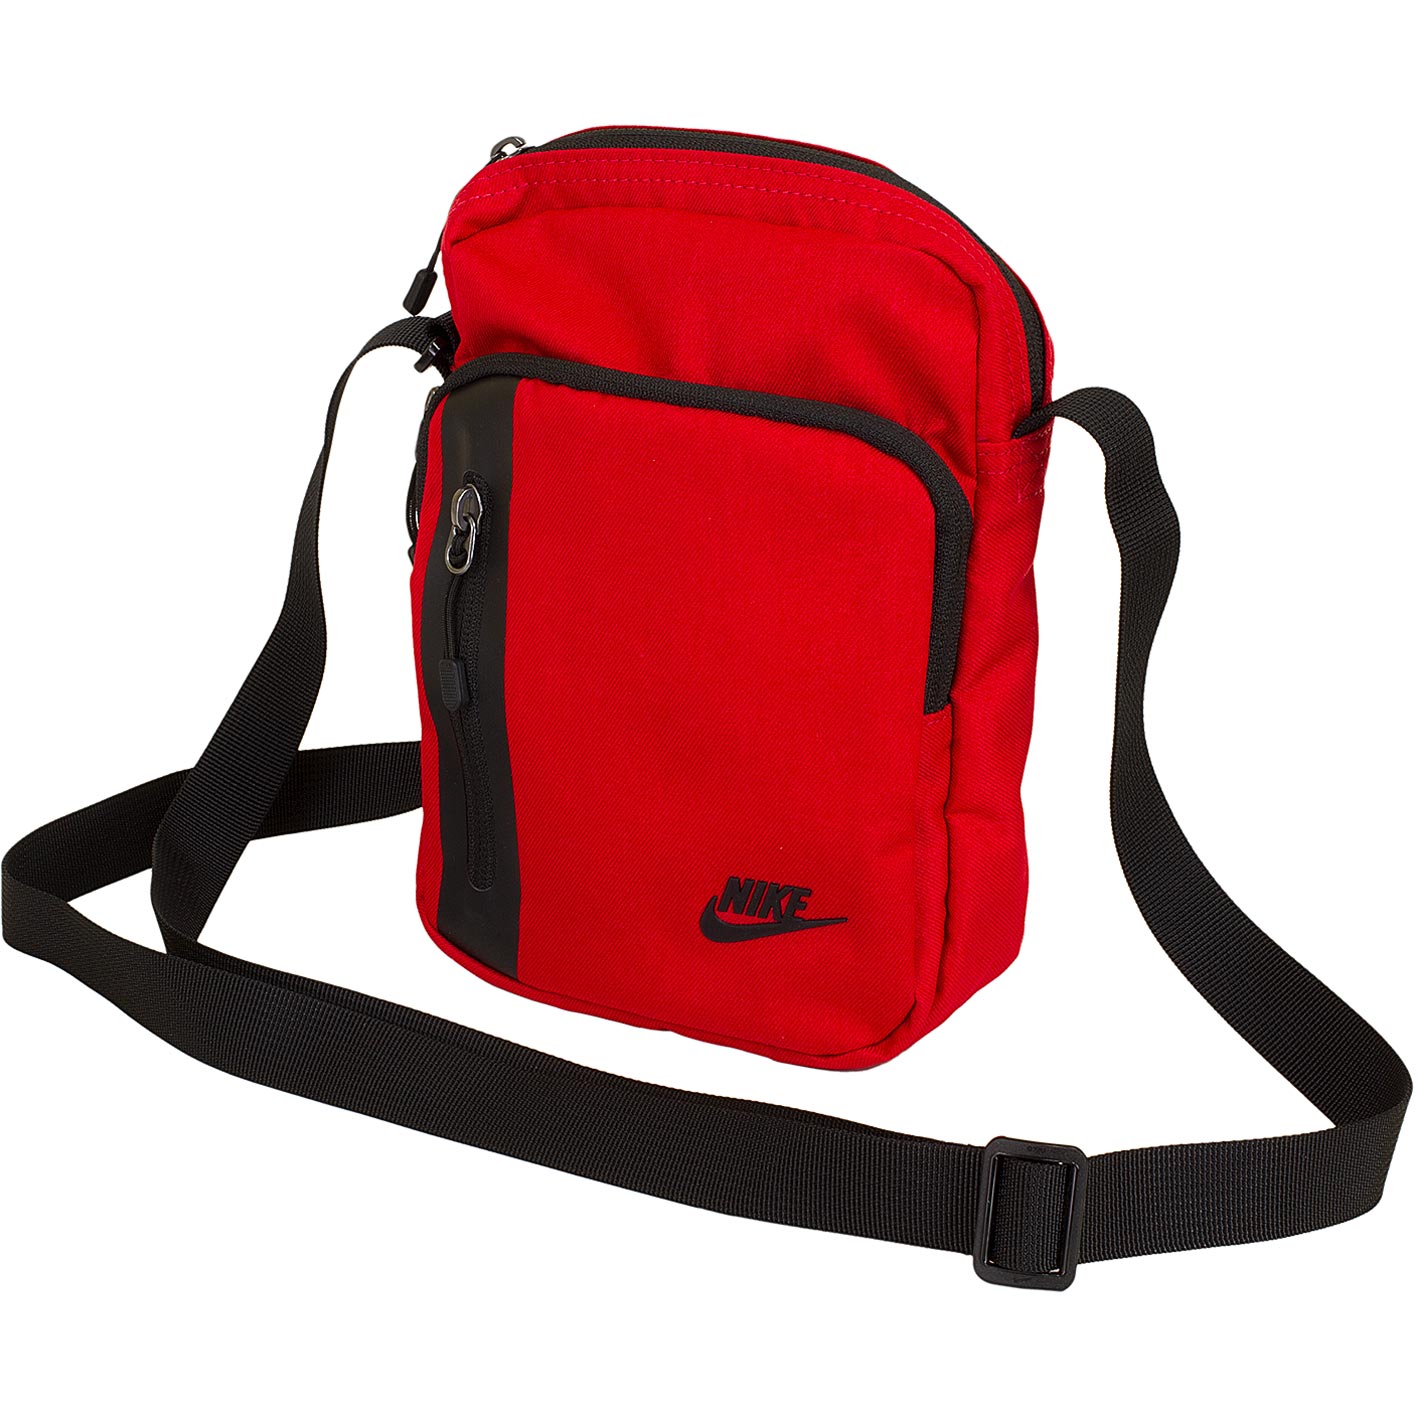 ☆ Nike Tasche Tech Small Items 3.0 rot/schwarz - hier bestellen!